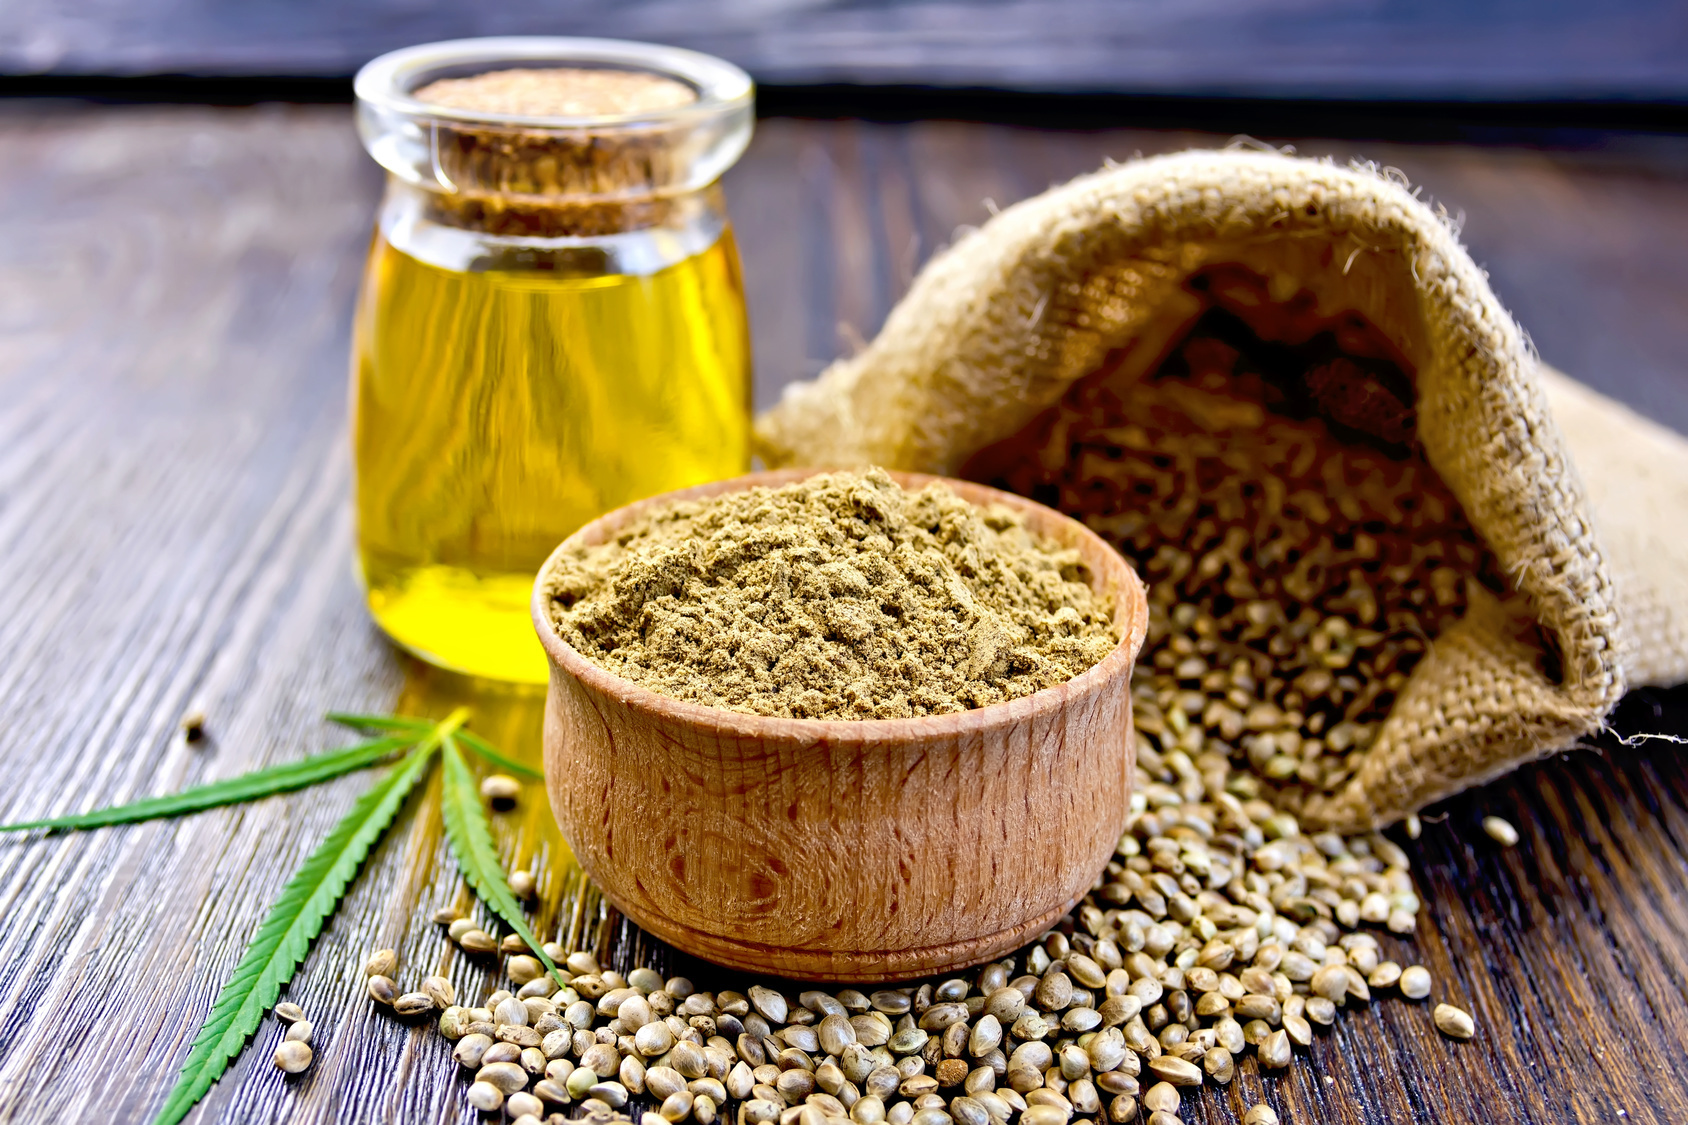 La farina di semi di canapa si ottiene dalla macinatura dei semi della pianta cannabis sativa attraverso un processo di pressatura all’interno di un torchio, per poi essere macinati e ridotti in polvere.